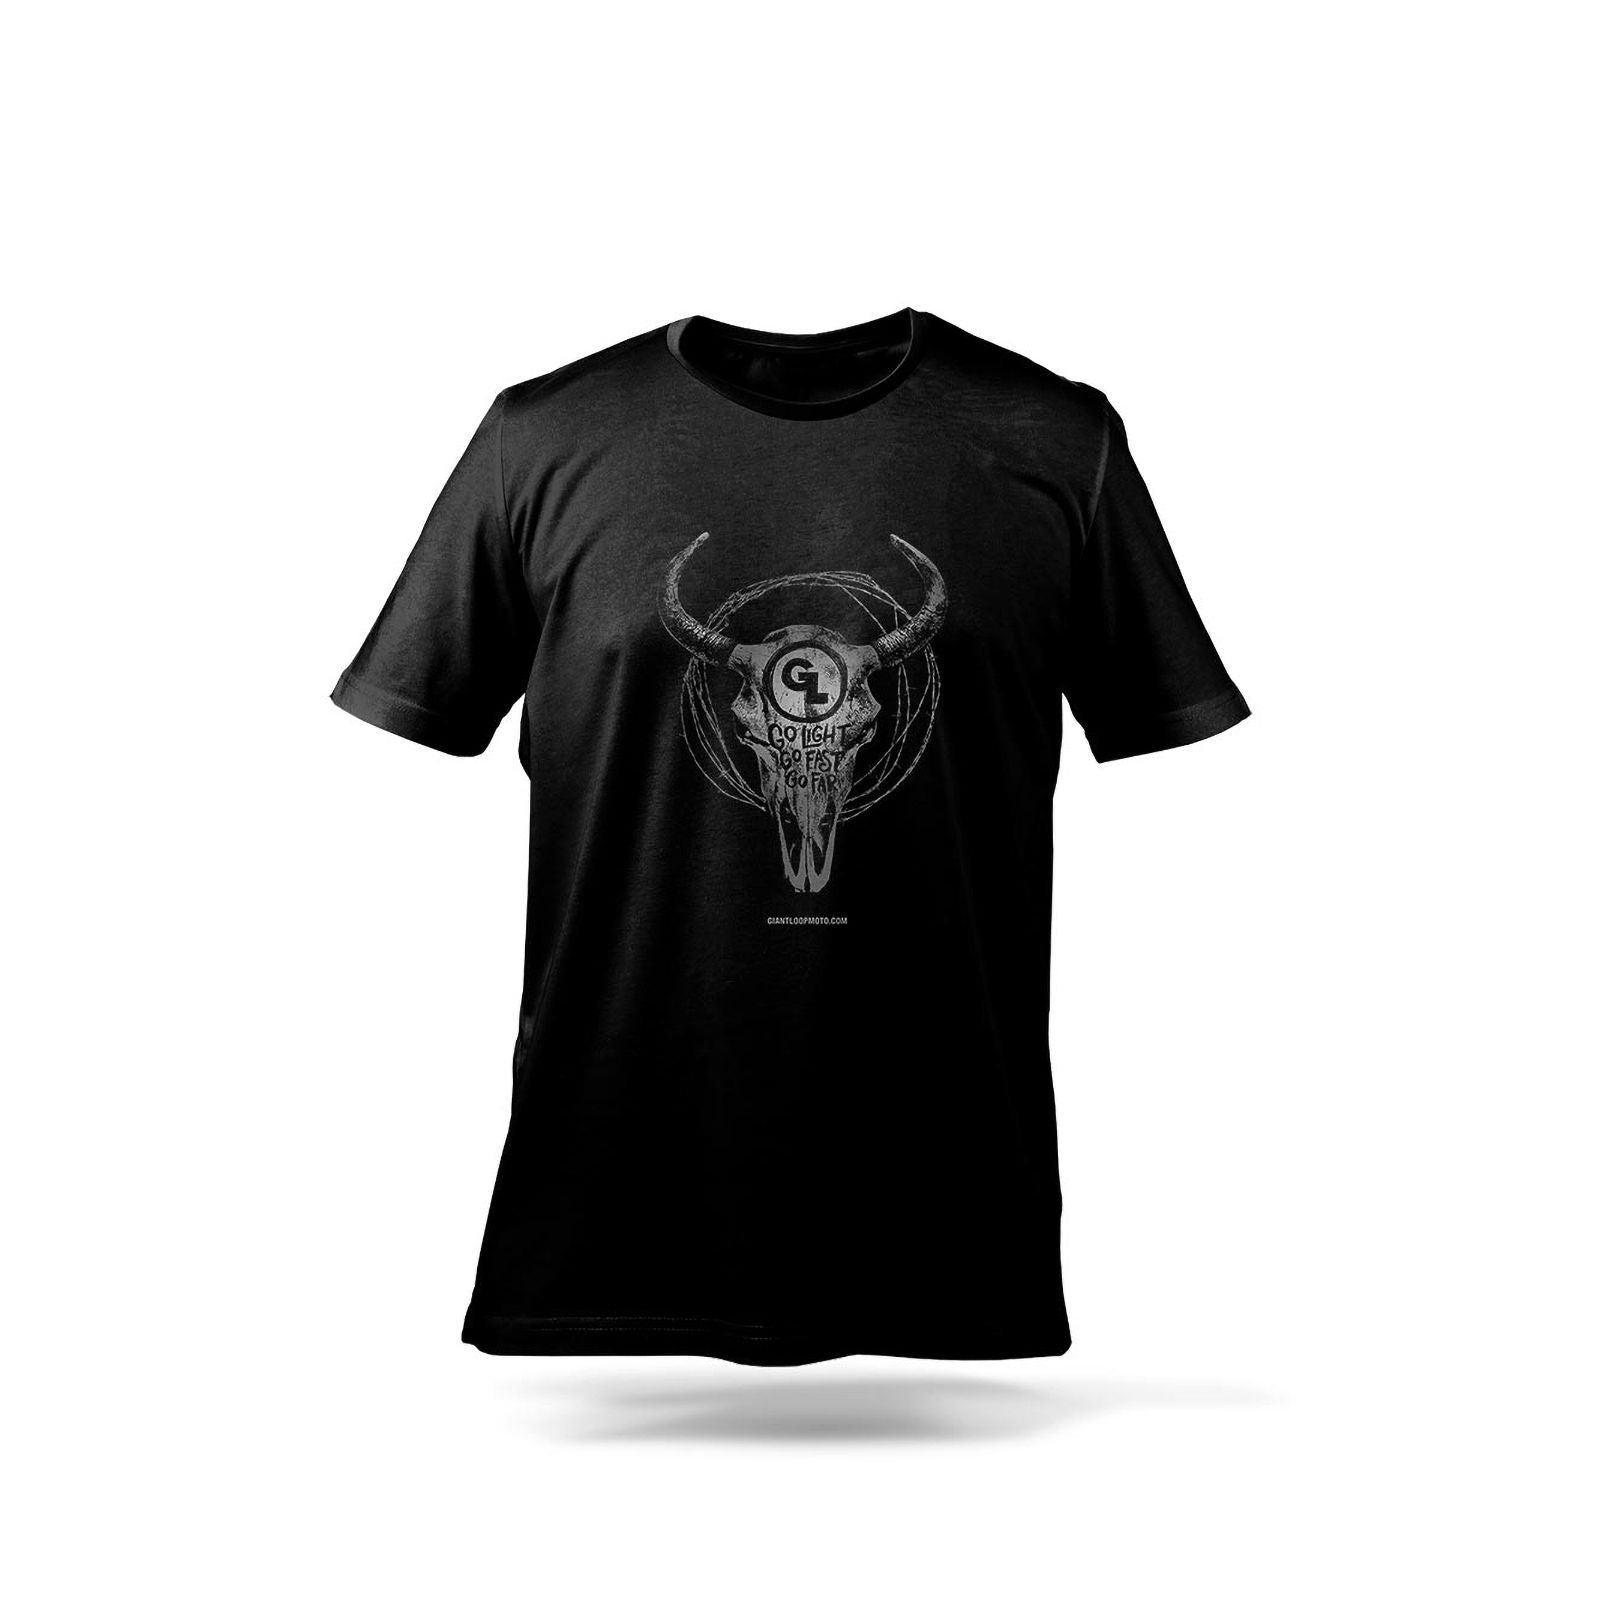 New GIANT LOOP Short Sleeve T-Shirt - Black - 2XL #GLTSBSBWXXL